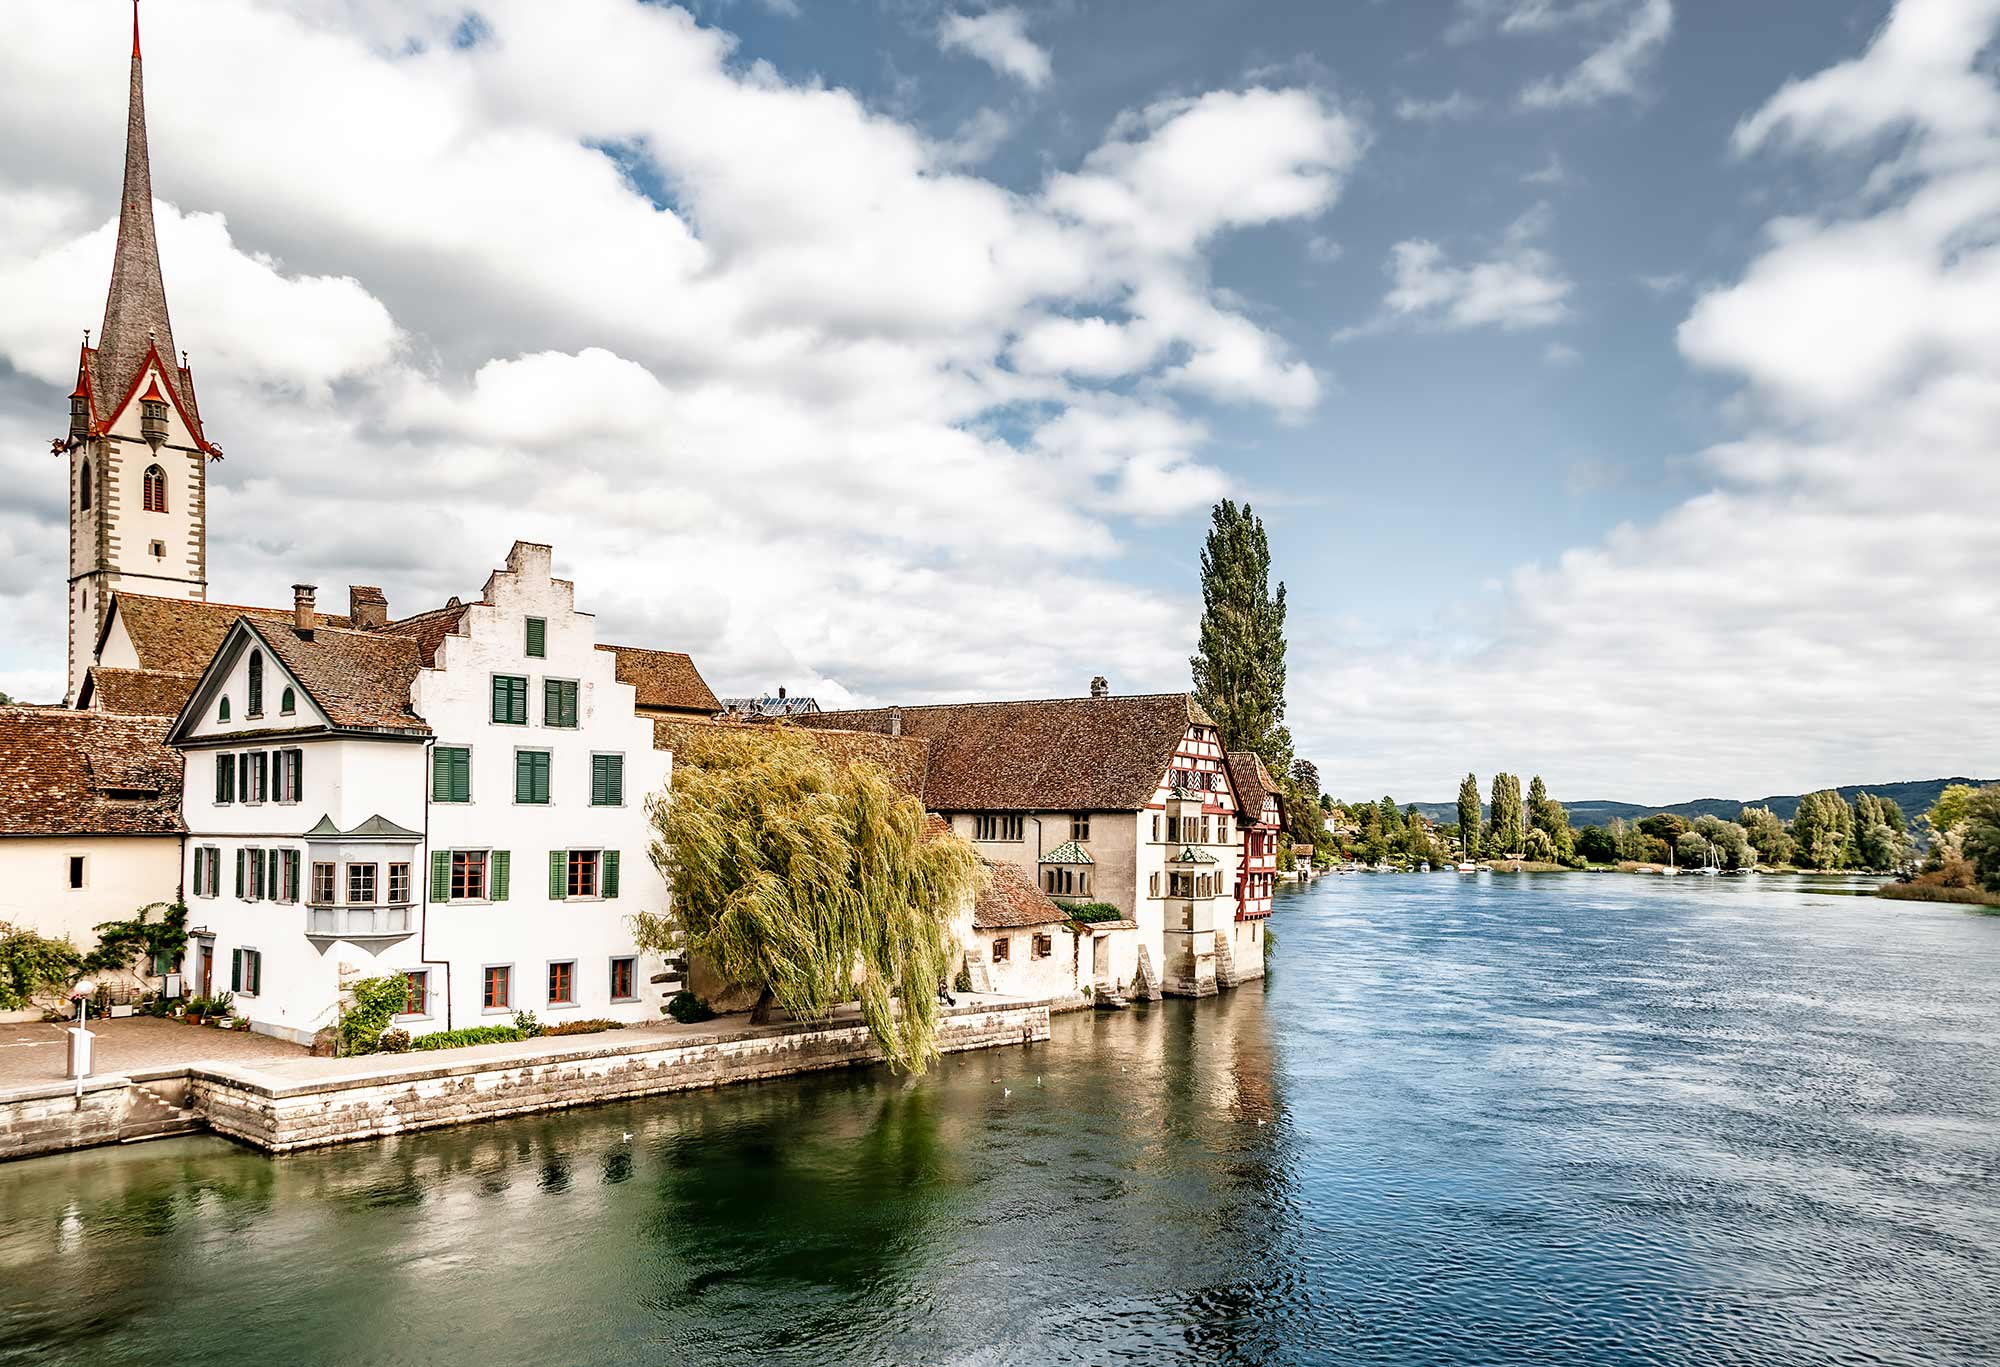 Im Bild ist Stein am Rhein zu sehen - eine Stadt in der Nähe von Konstanz.